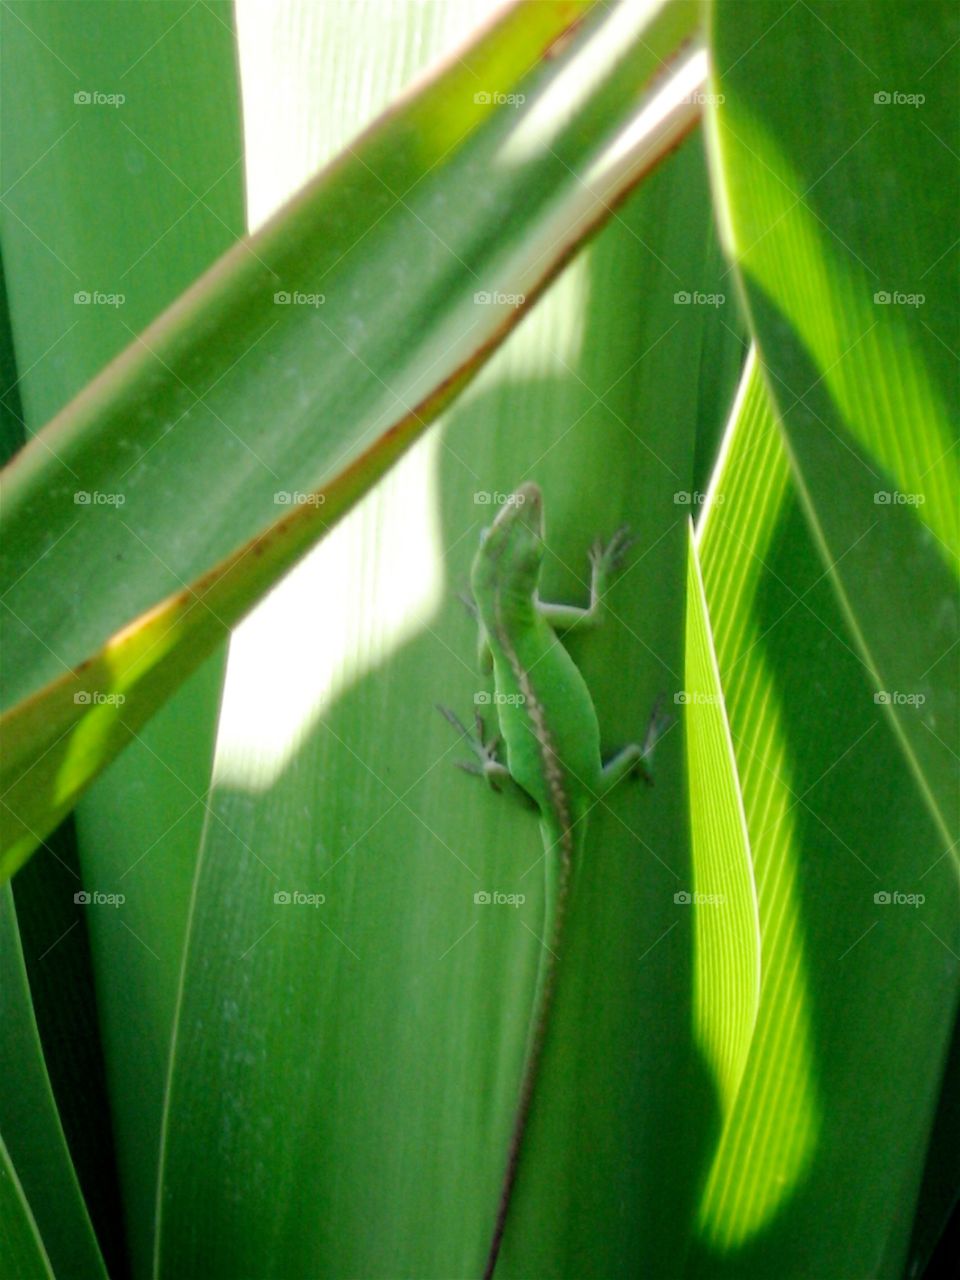 Gecko on a leaf